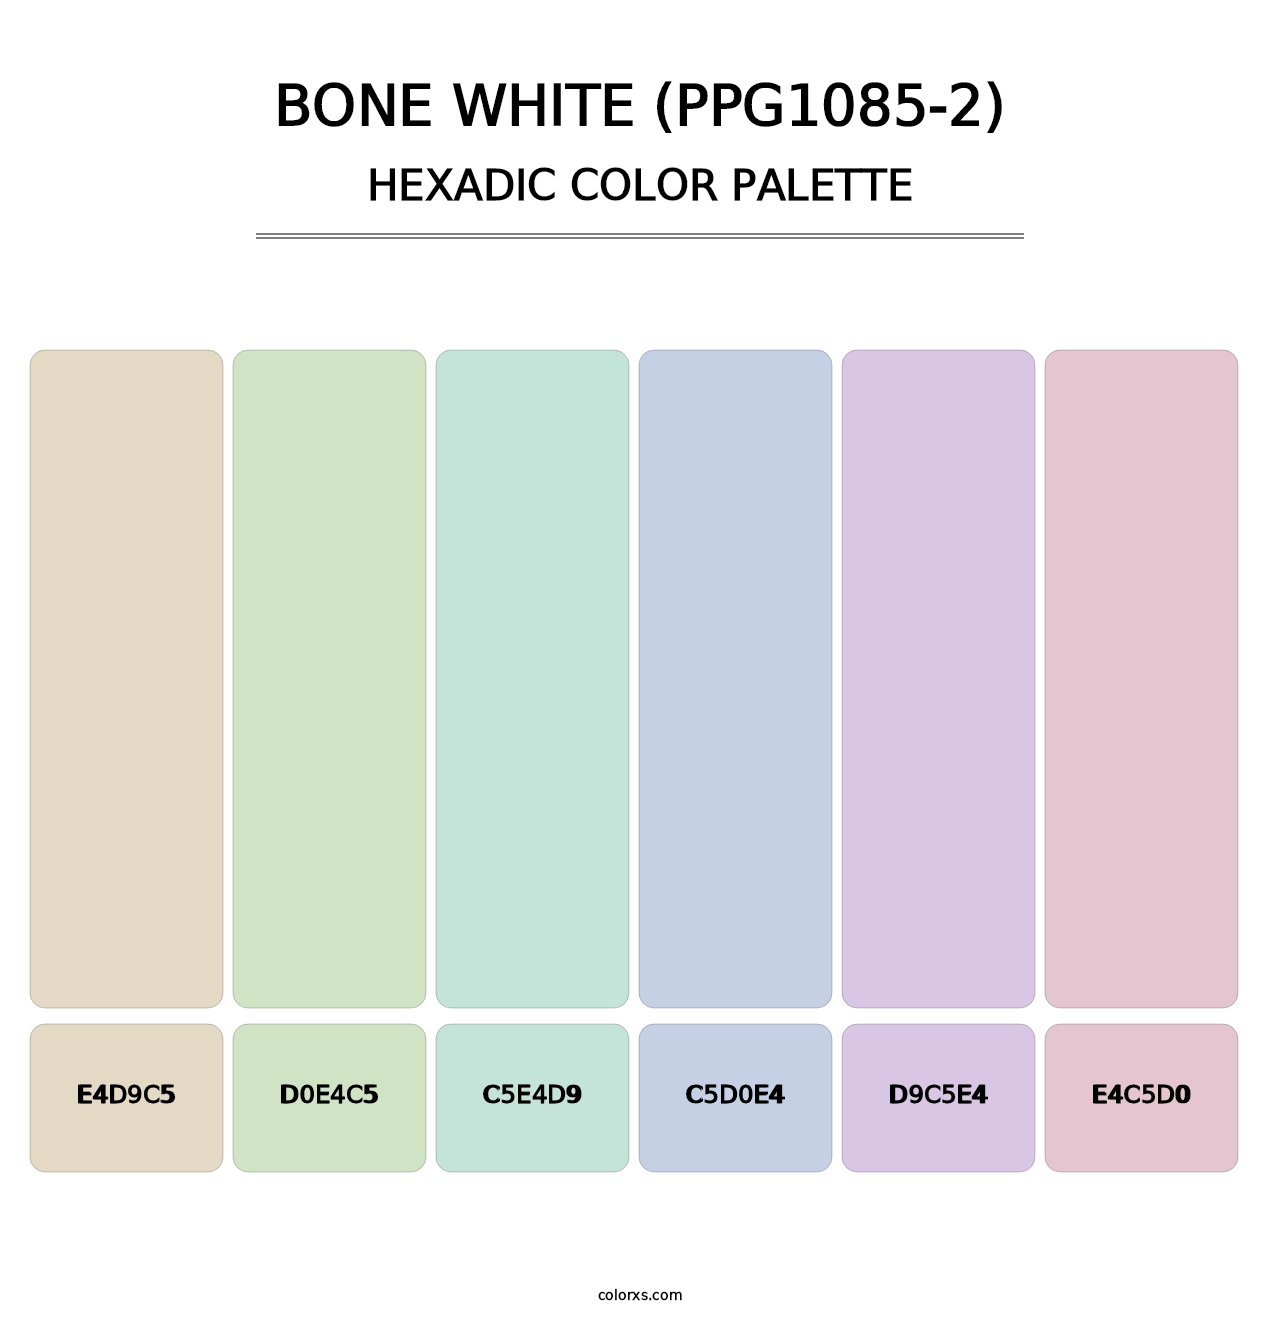 Bone White (PPG1085-2) - Hexadic Color Palette